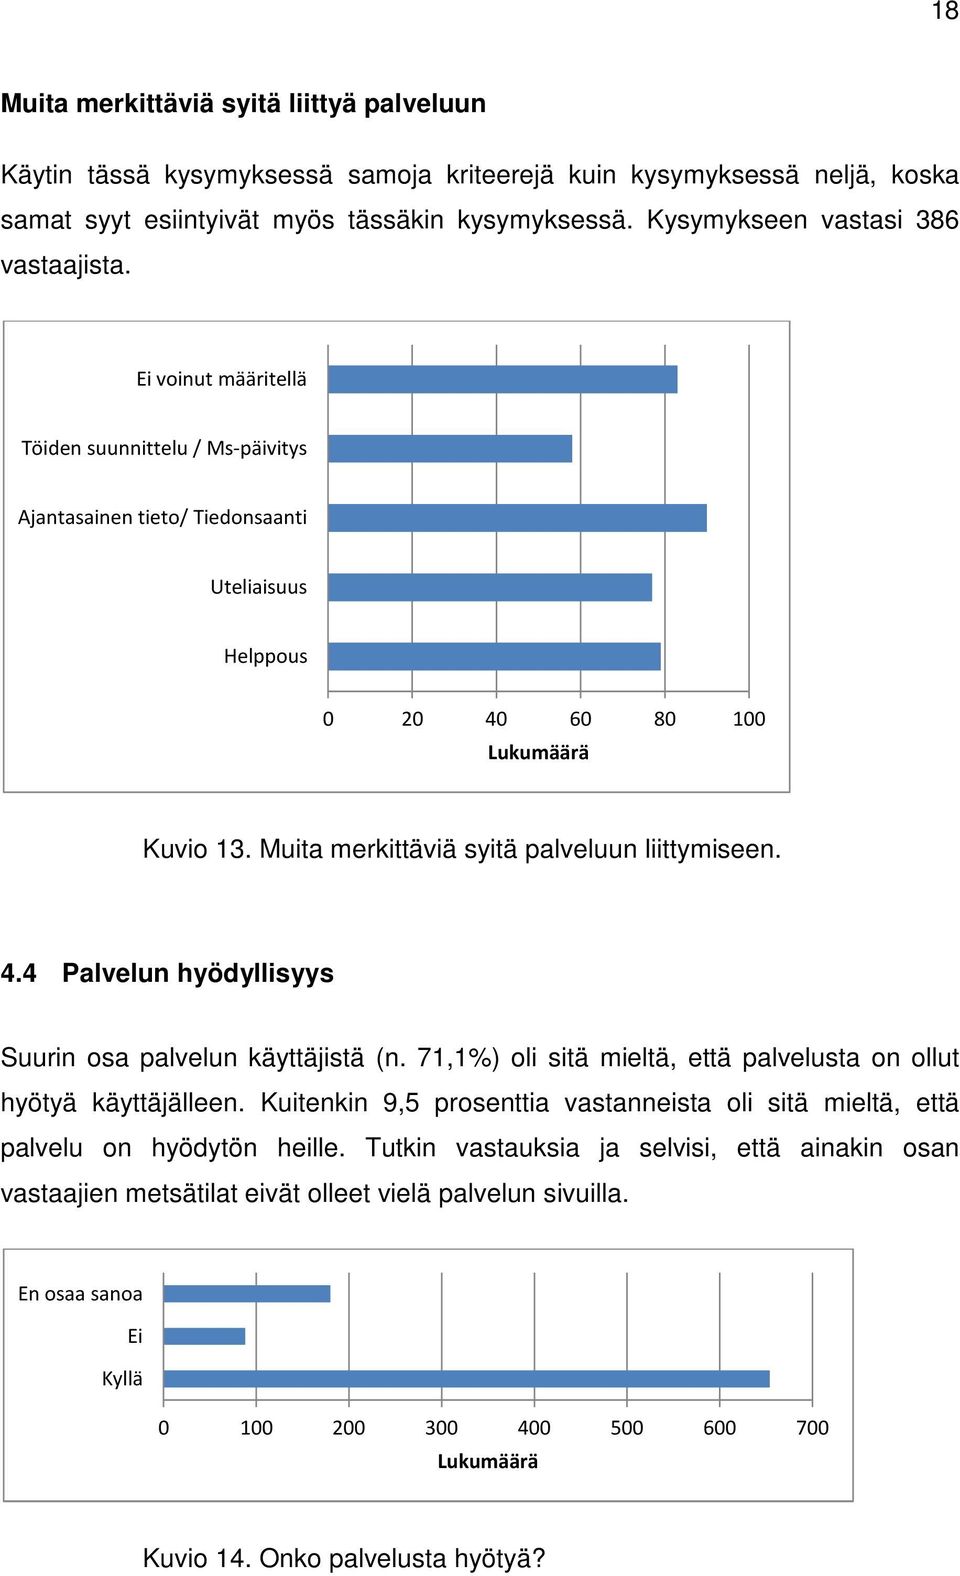 Muita merkittäviä syitä palveluun liittymiseen. 4.4 Palvelun hyödyllisyys Suurin osa palvelun käyttäjistä (n. 71,1%) oli sitä mieltä, että palvelusta on ollut hyötyä käyttäjälleen.